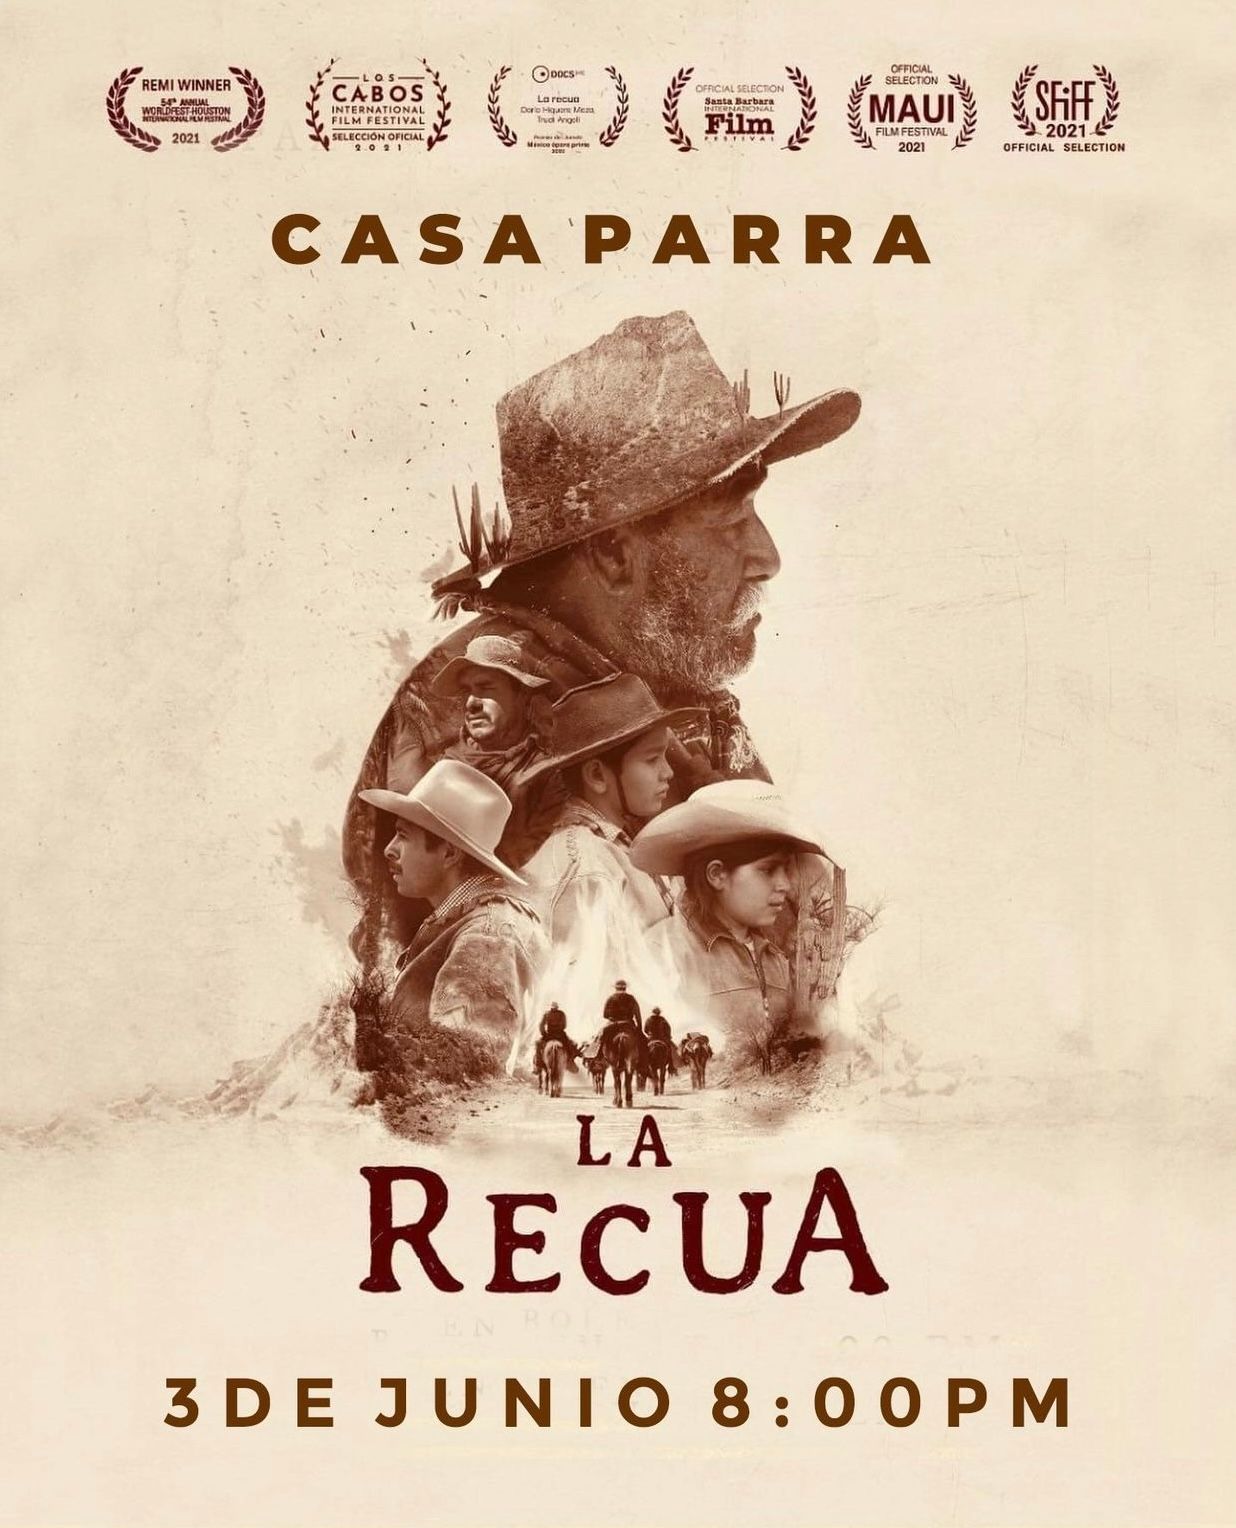 Proyectarán la película “La Recua” en La Paz